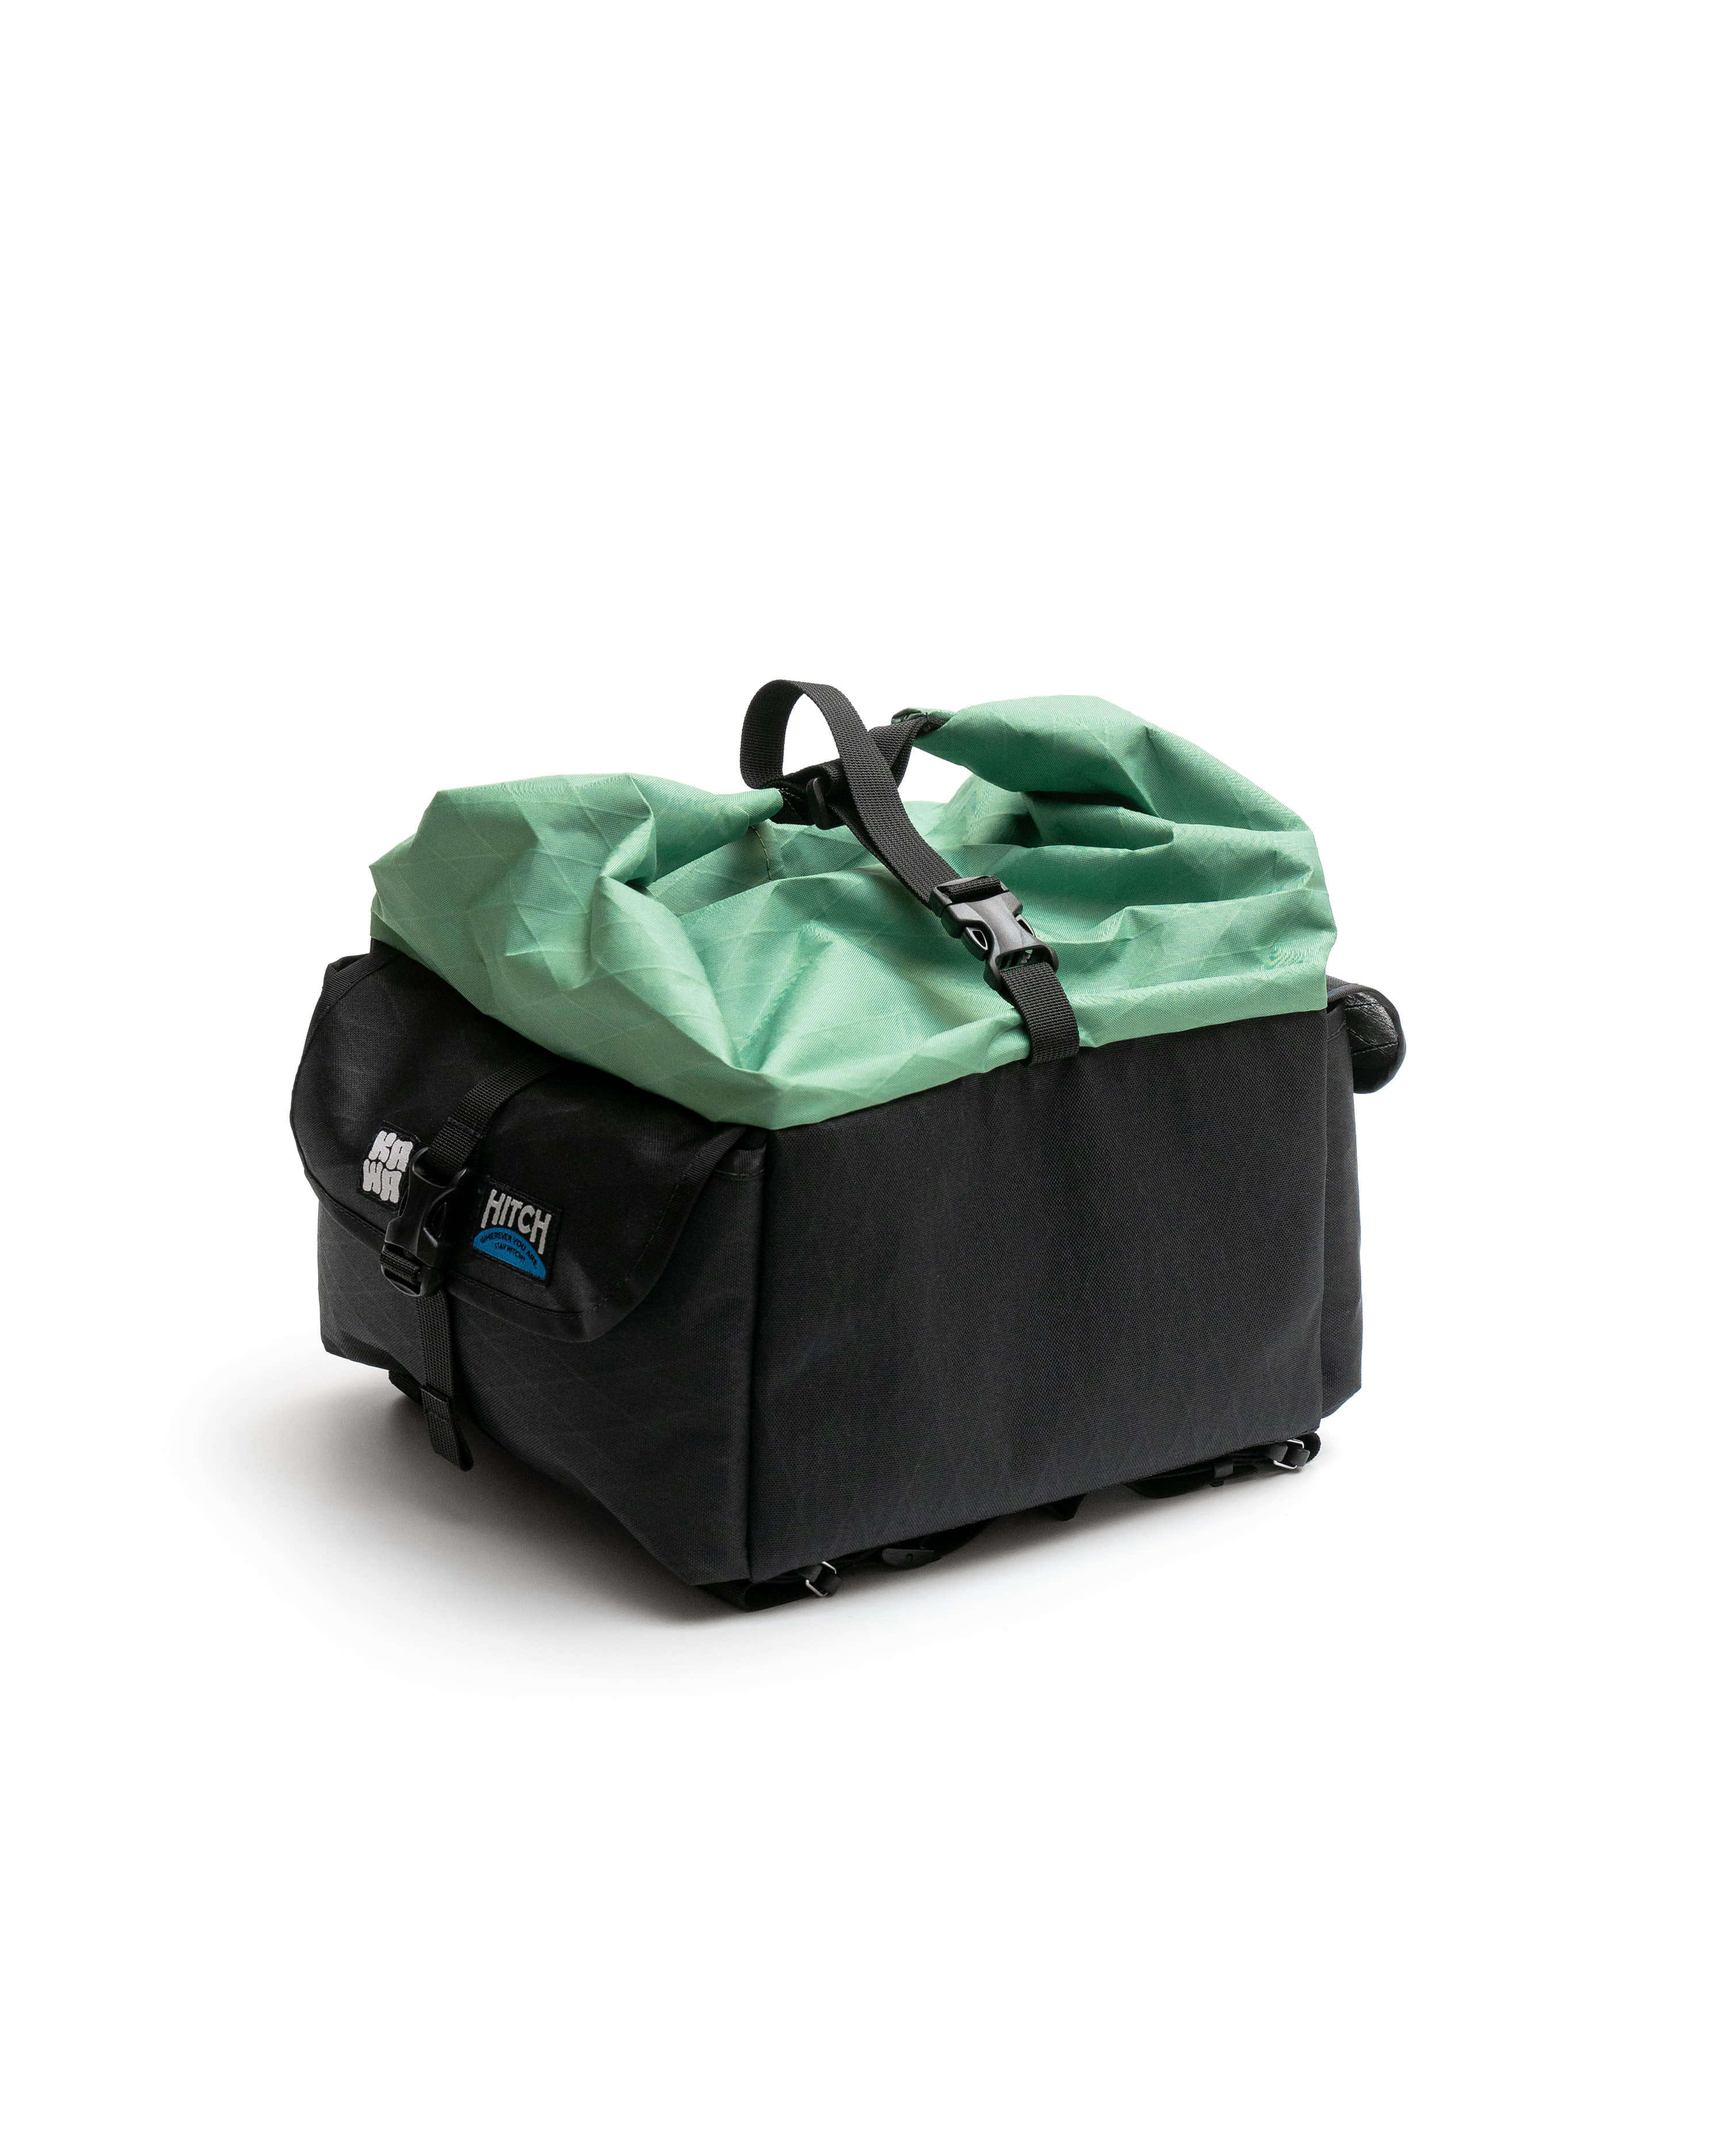 HITCHKAWA Rolltop rack bag (RX30)